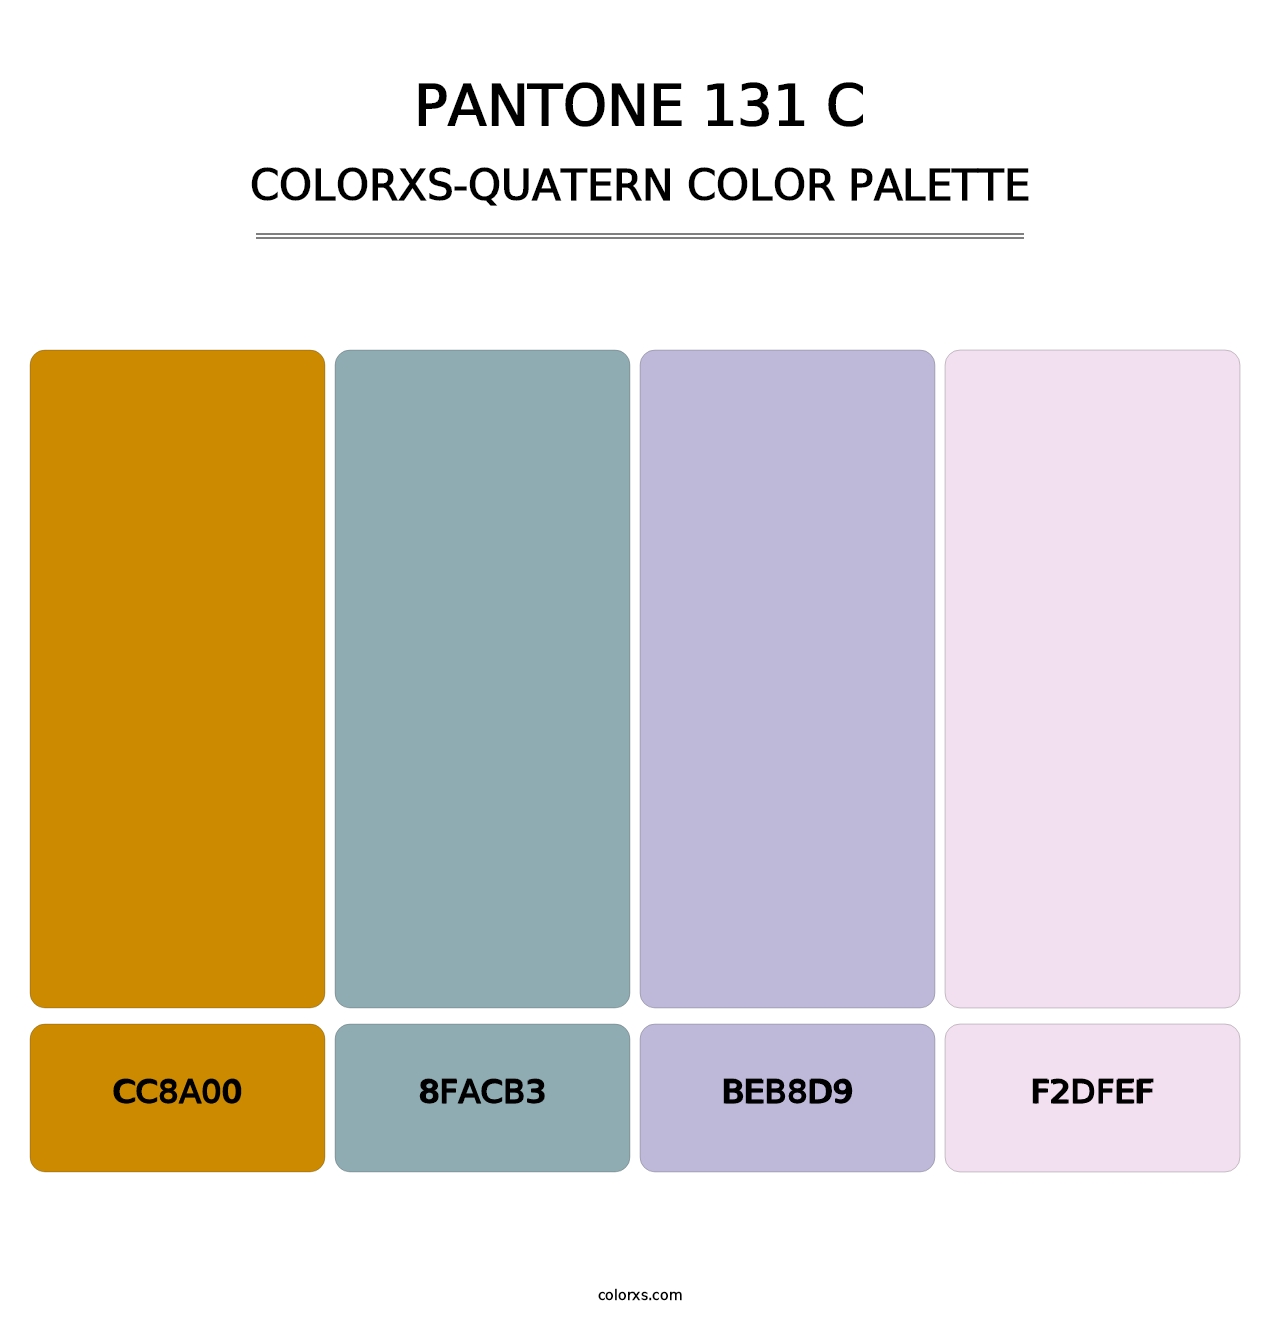 PANTONE 131 C - Colorxs Quatern Palette